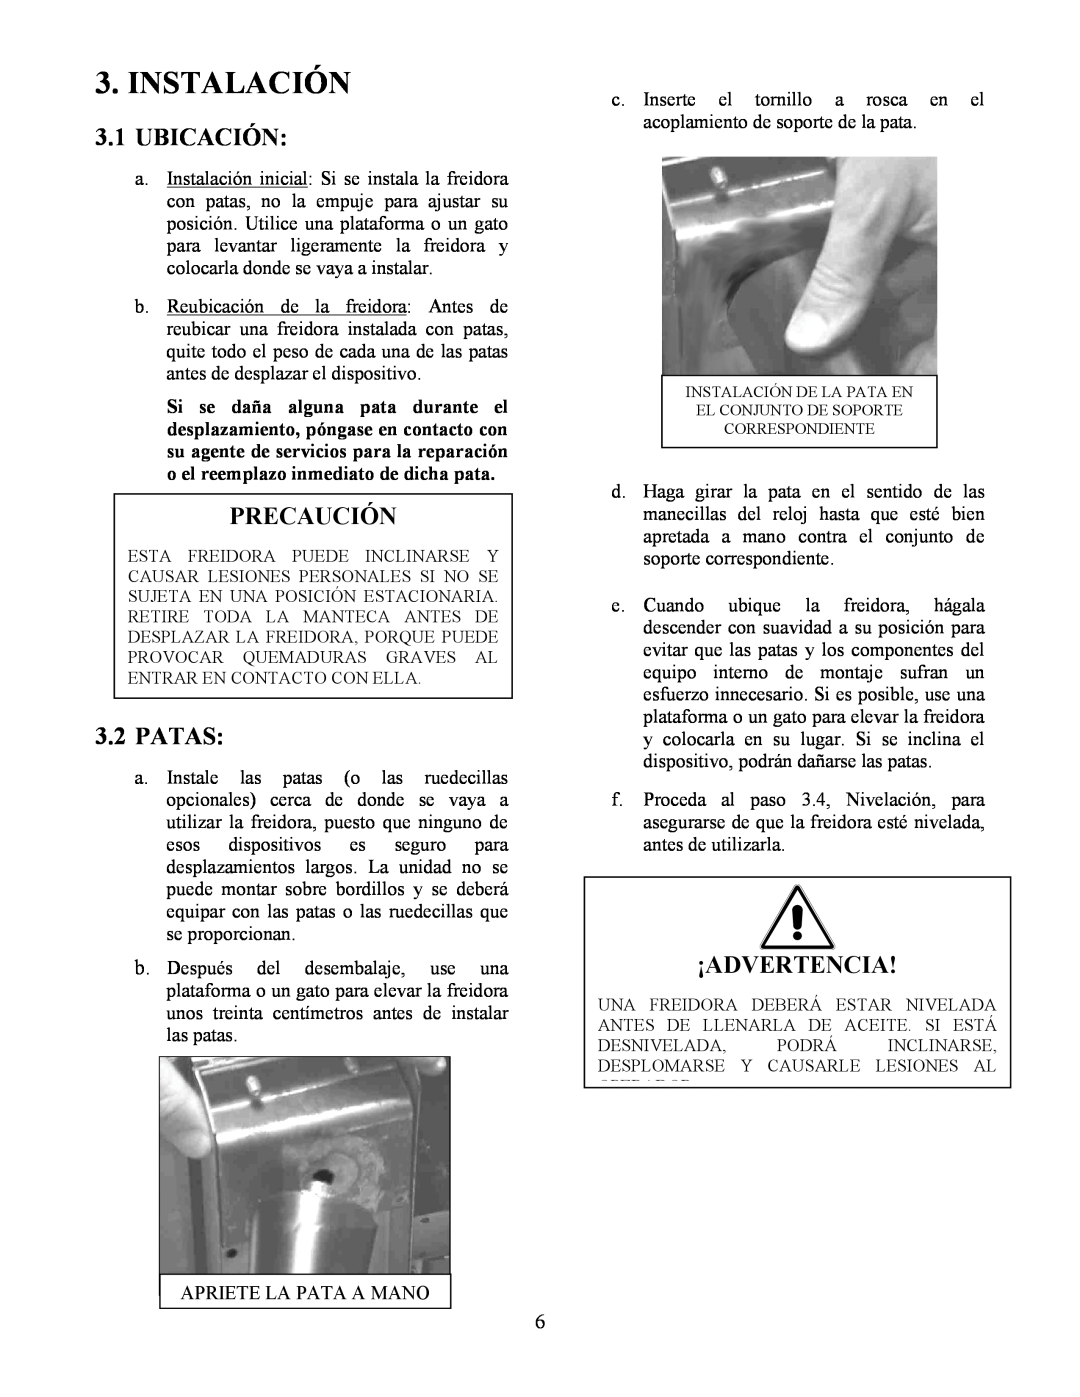 Frymaster Y SM80 manual Instalación, 3.1UBICACIÓN, Precaución, 3.2PATAS, ¡Advertencia 